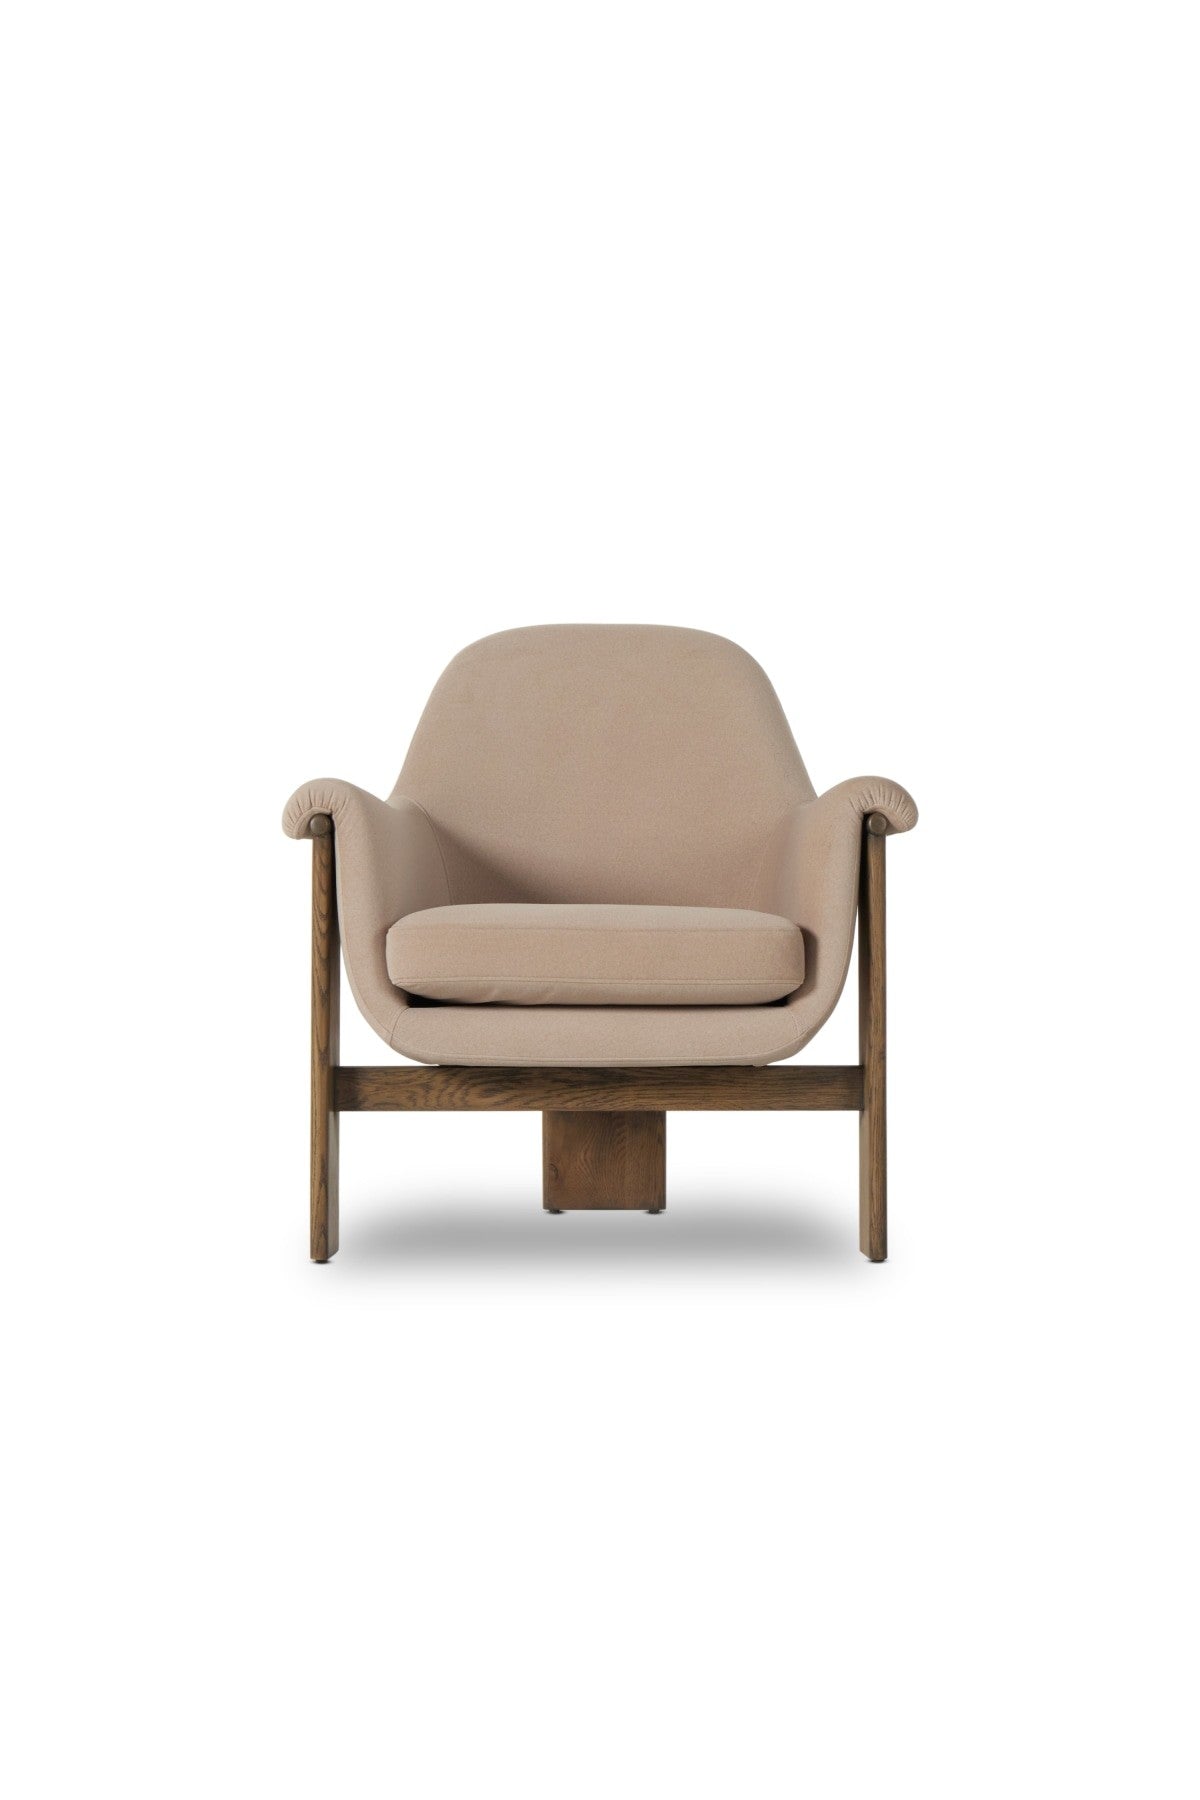 Savoy Chair - Flax